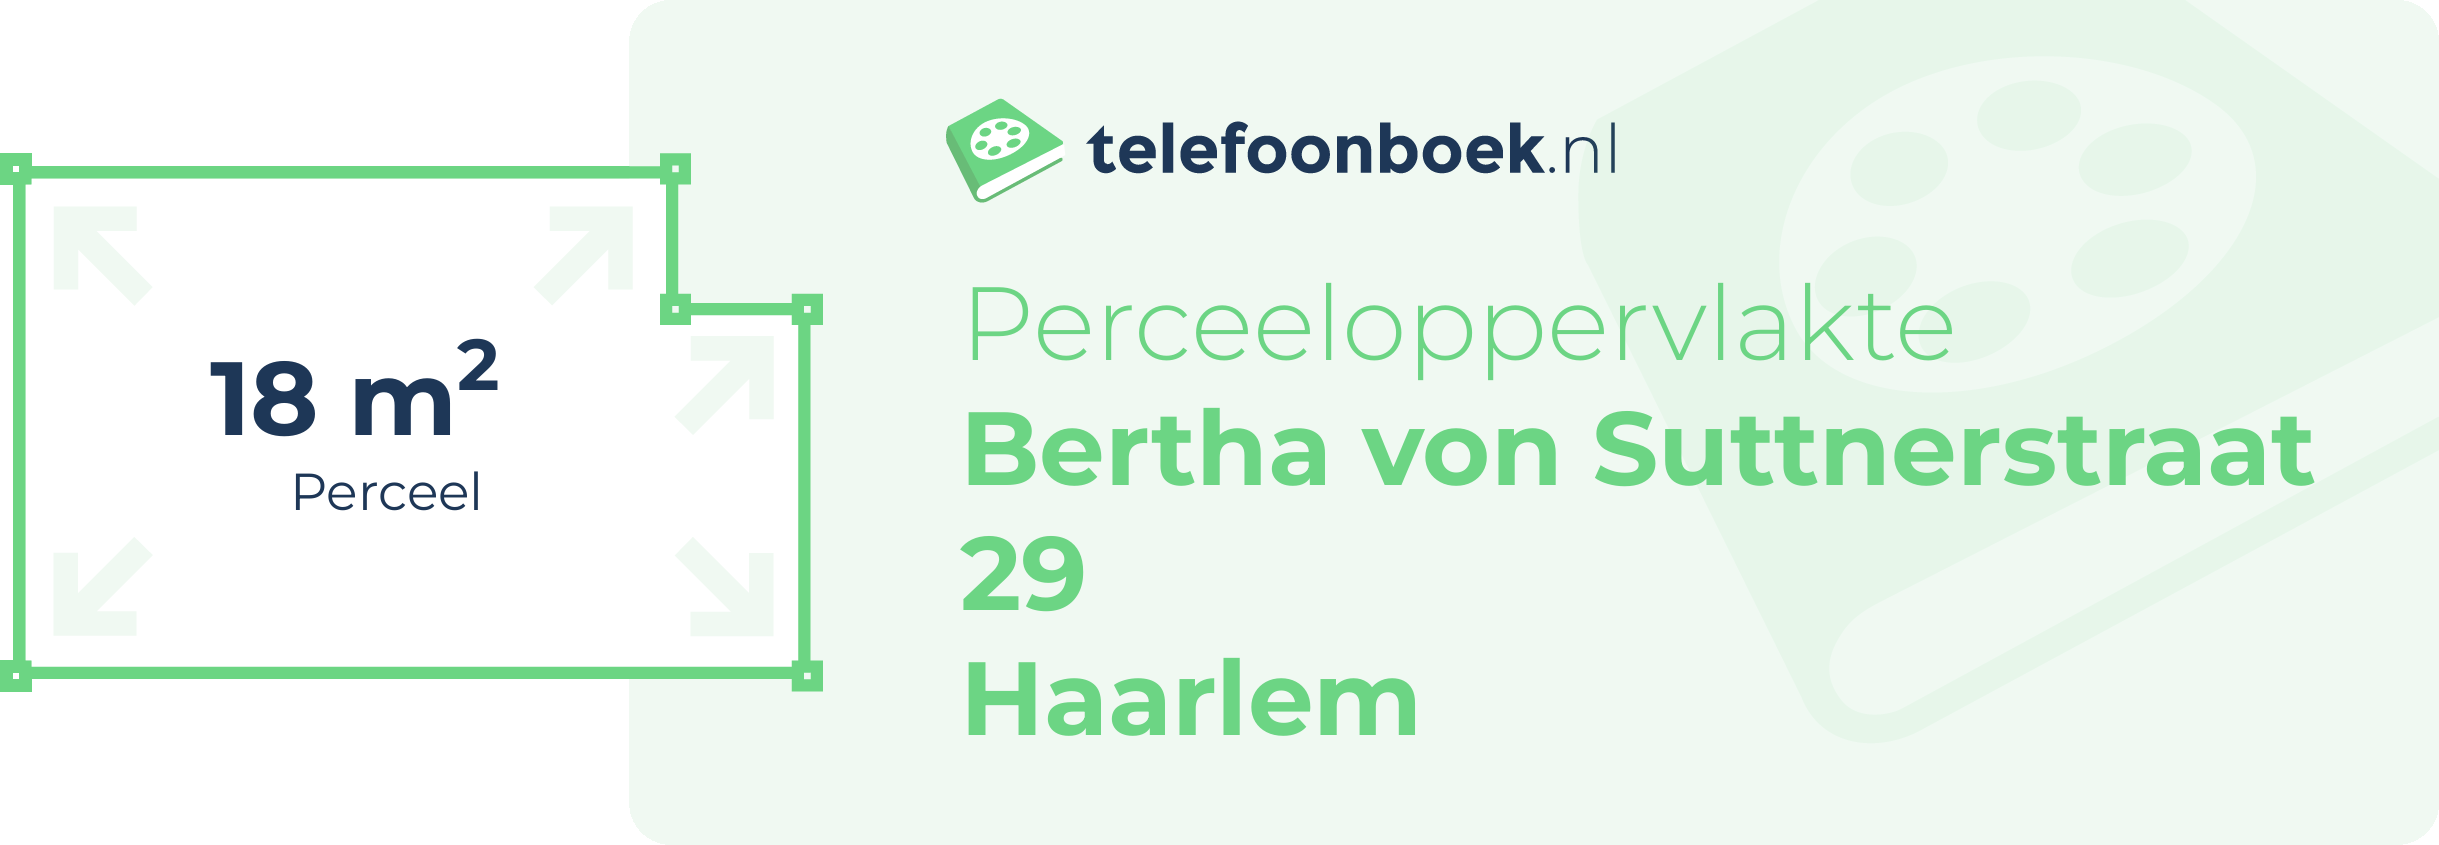 Perceeloppervlakte Bertha Von Suttnerstraat 29 Haarlem